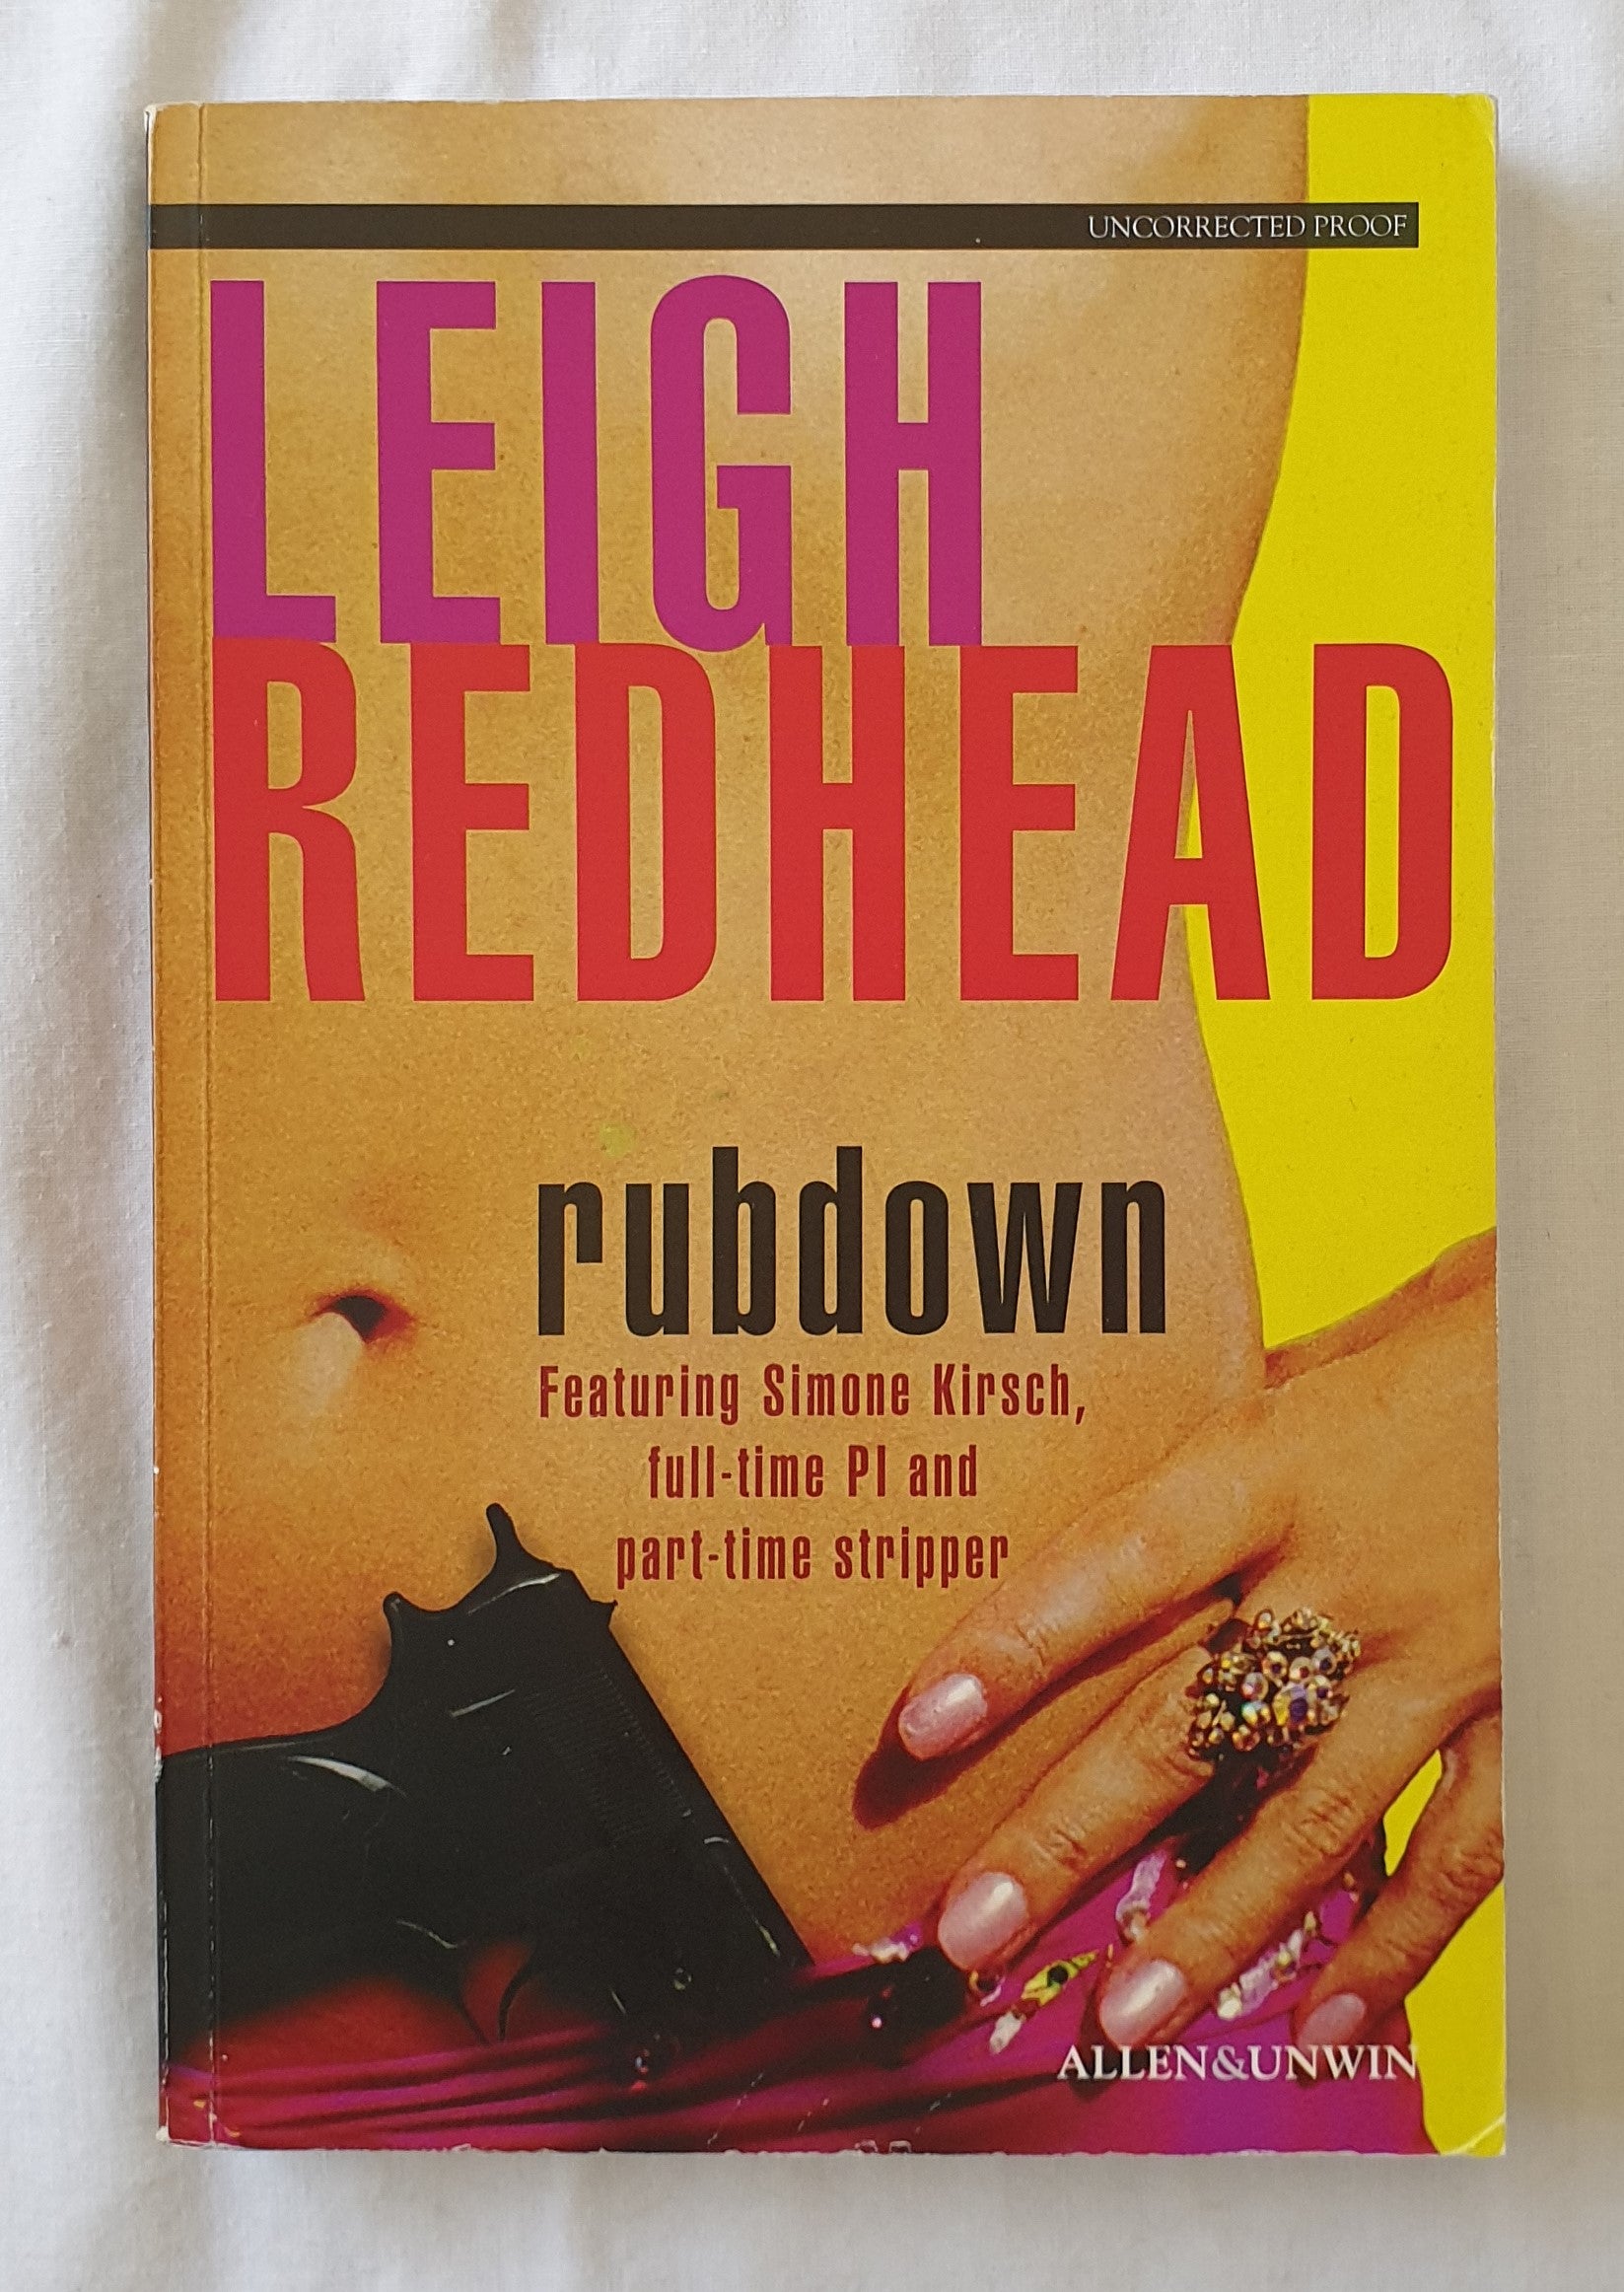 Rubdown by Leigh Redhead